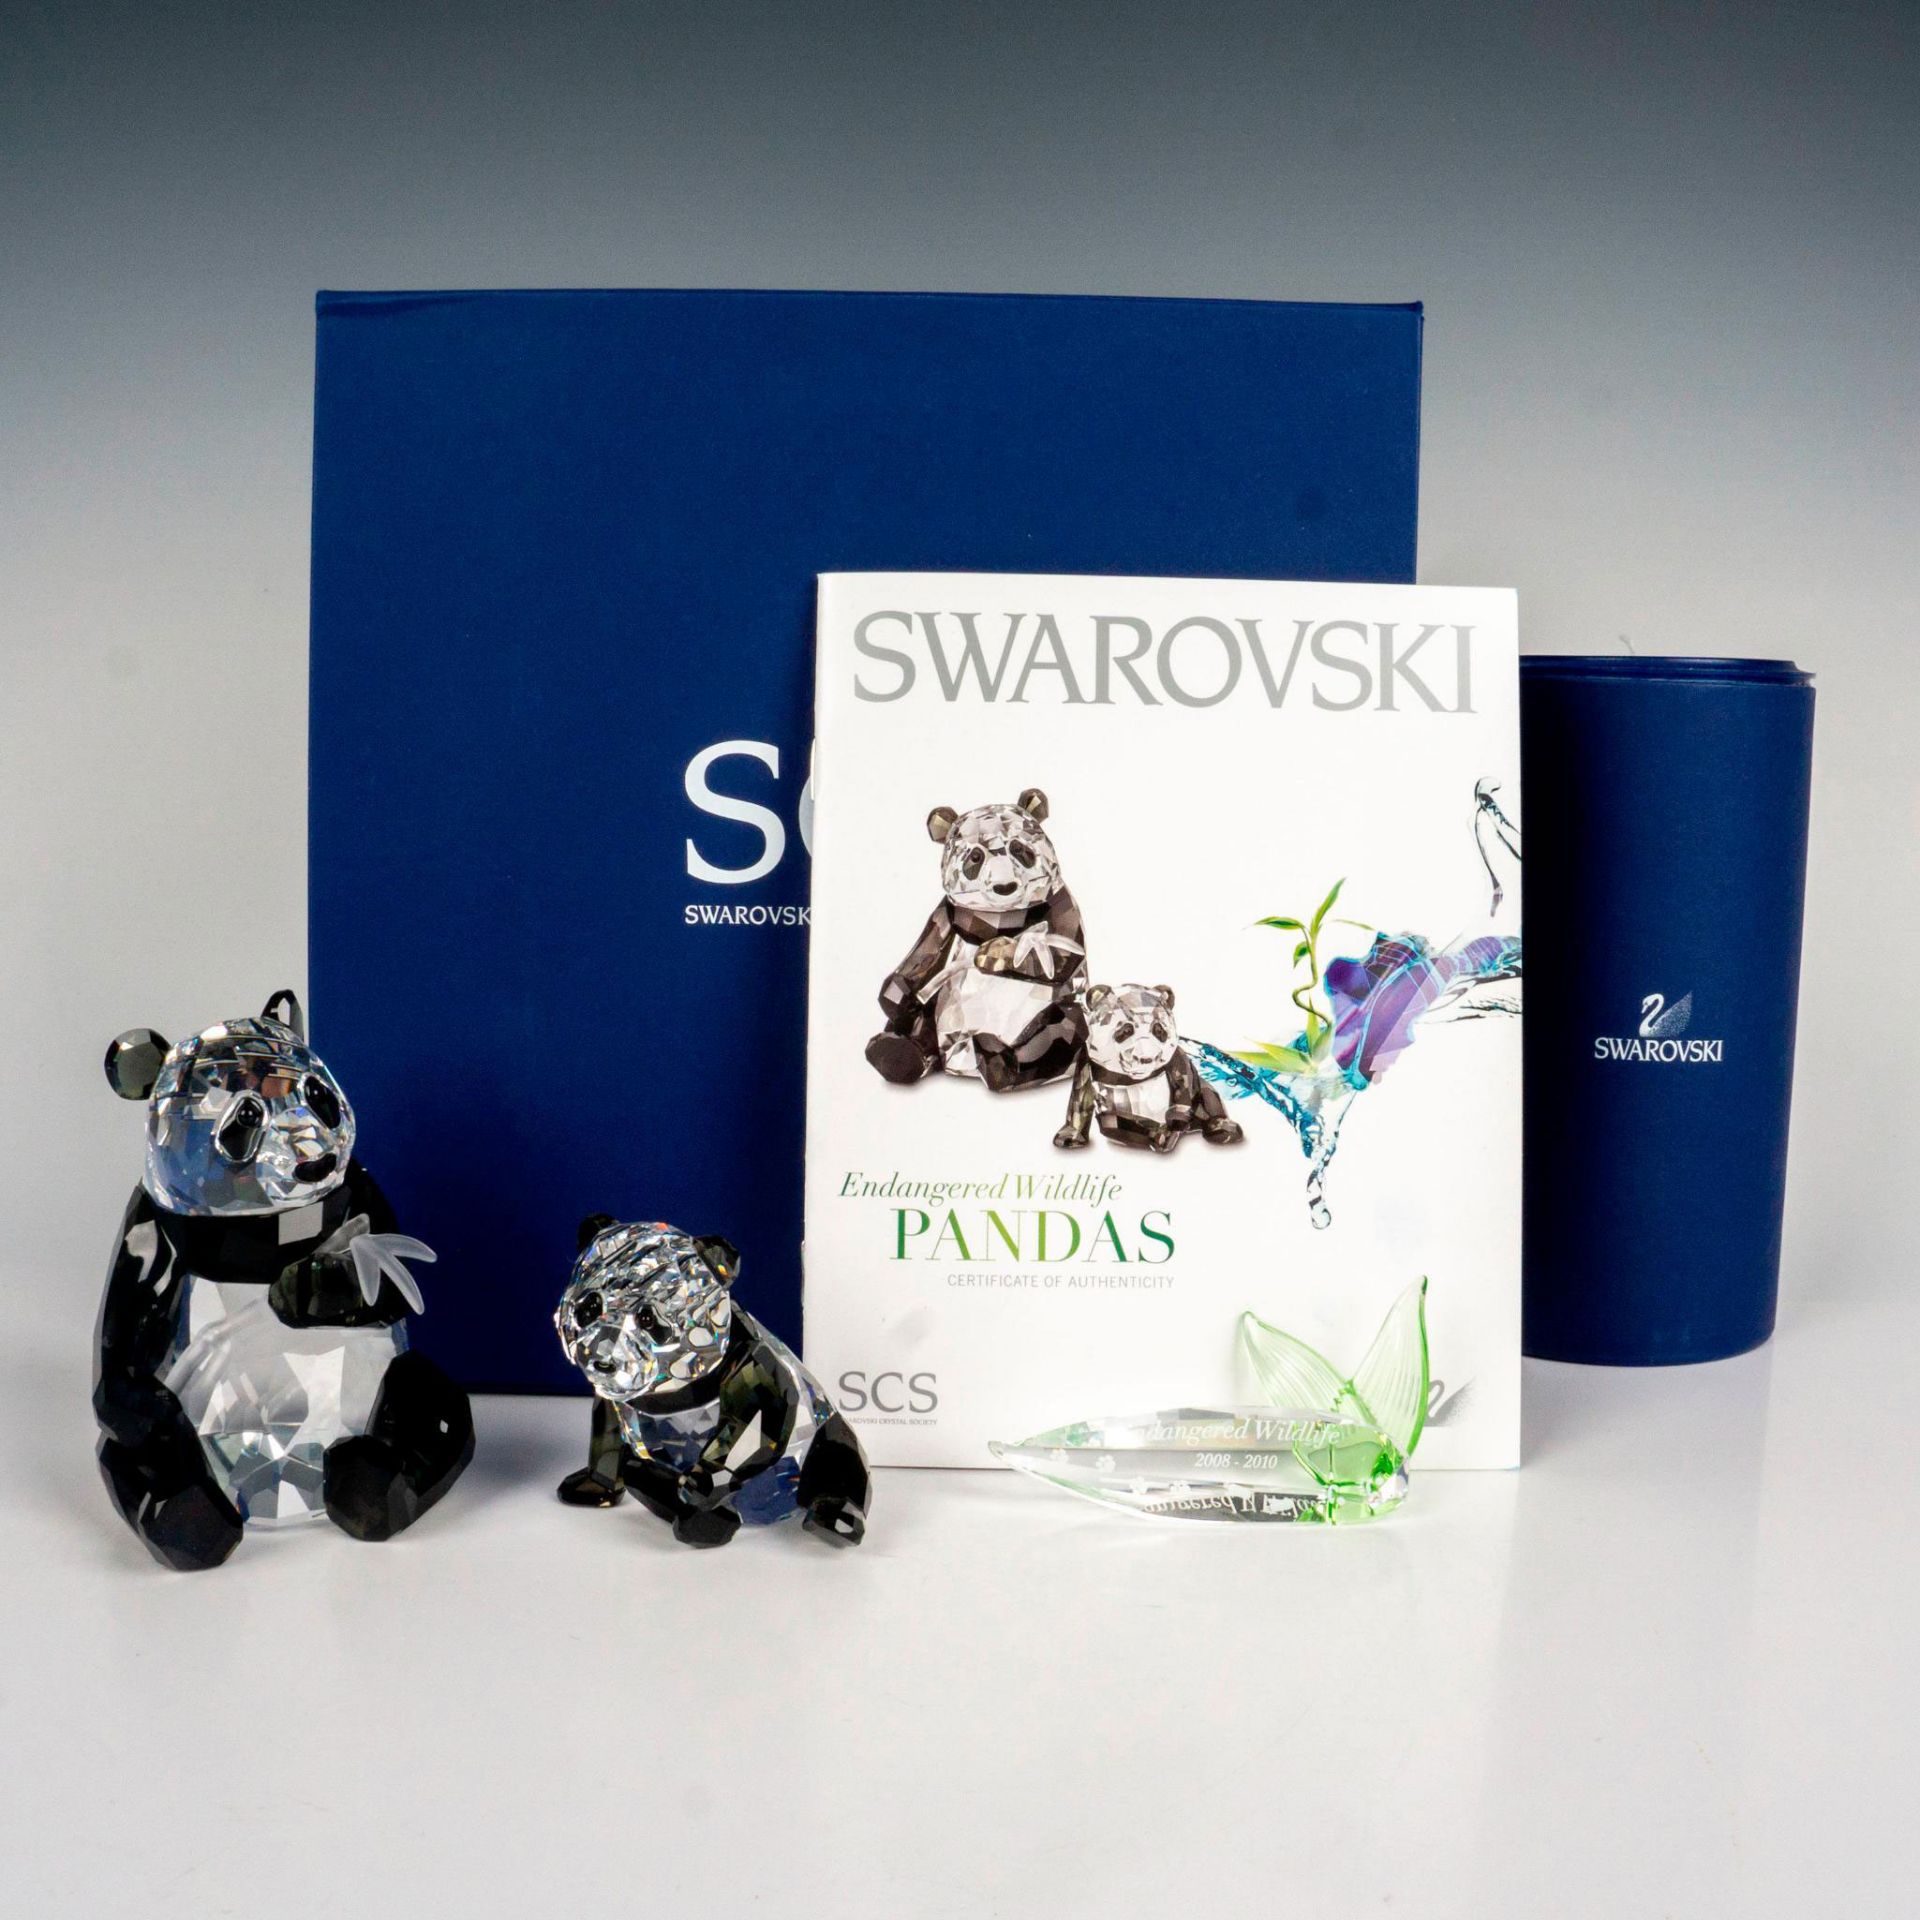 2pc Swarovski Crystal Figurines + Plaque, Pandas - Image 4 of 4